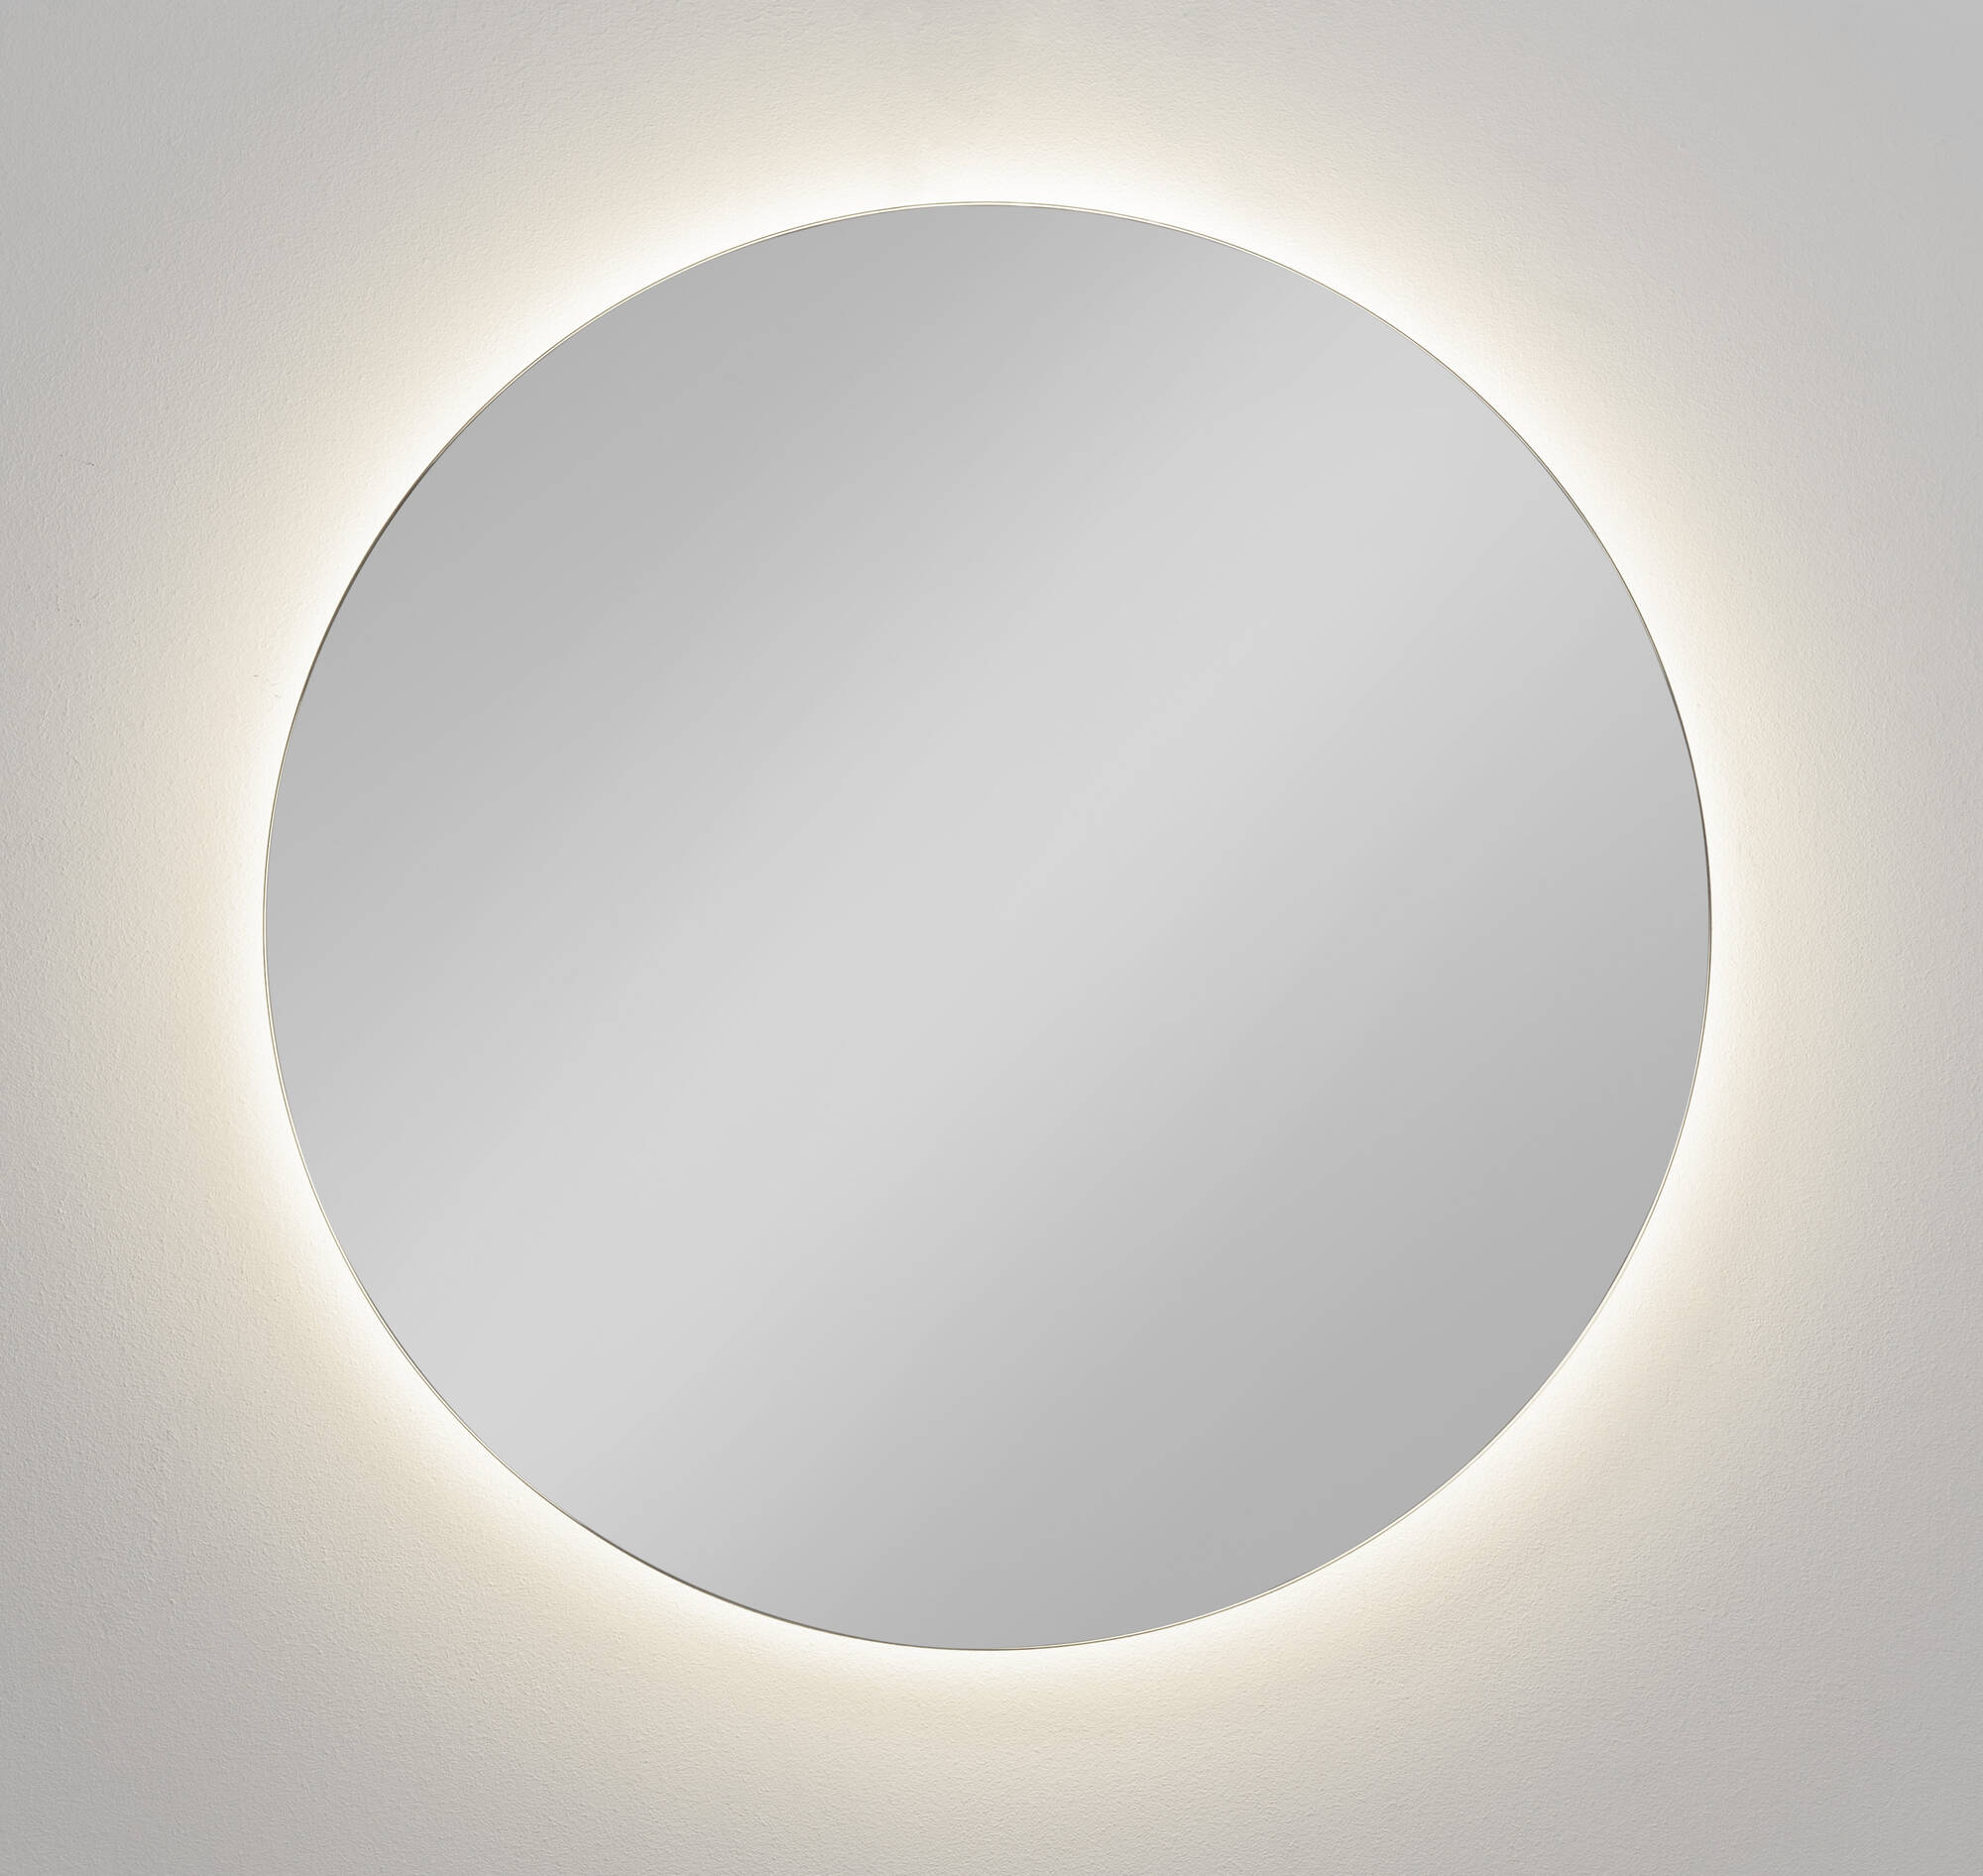 Ben Moon Spiegel met verlichting Ø 60 cm